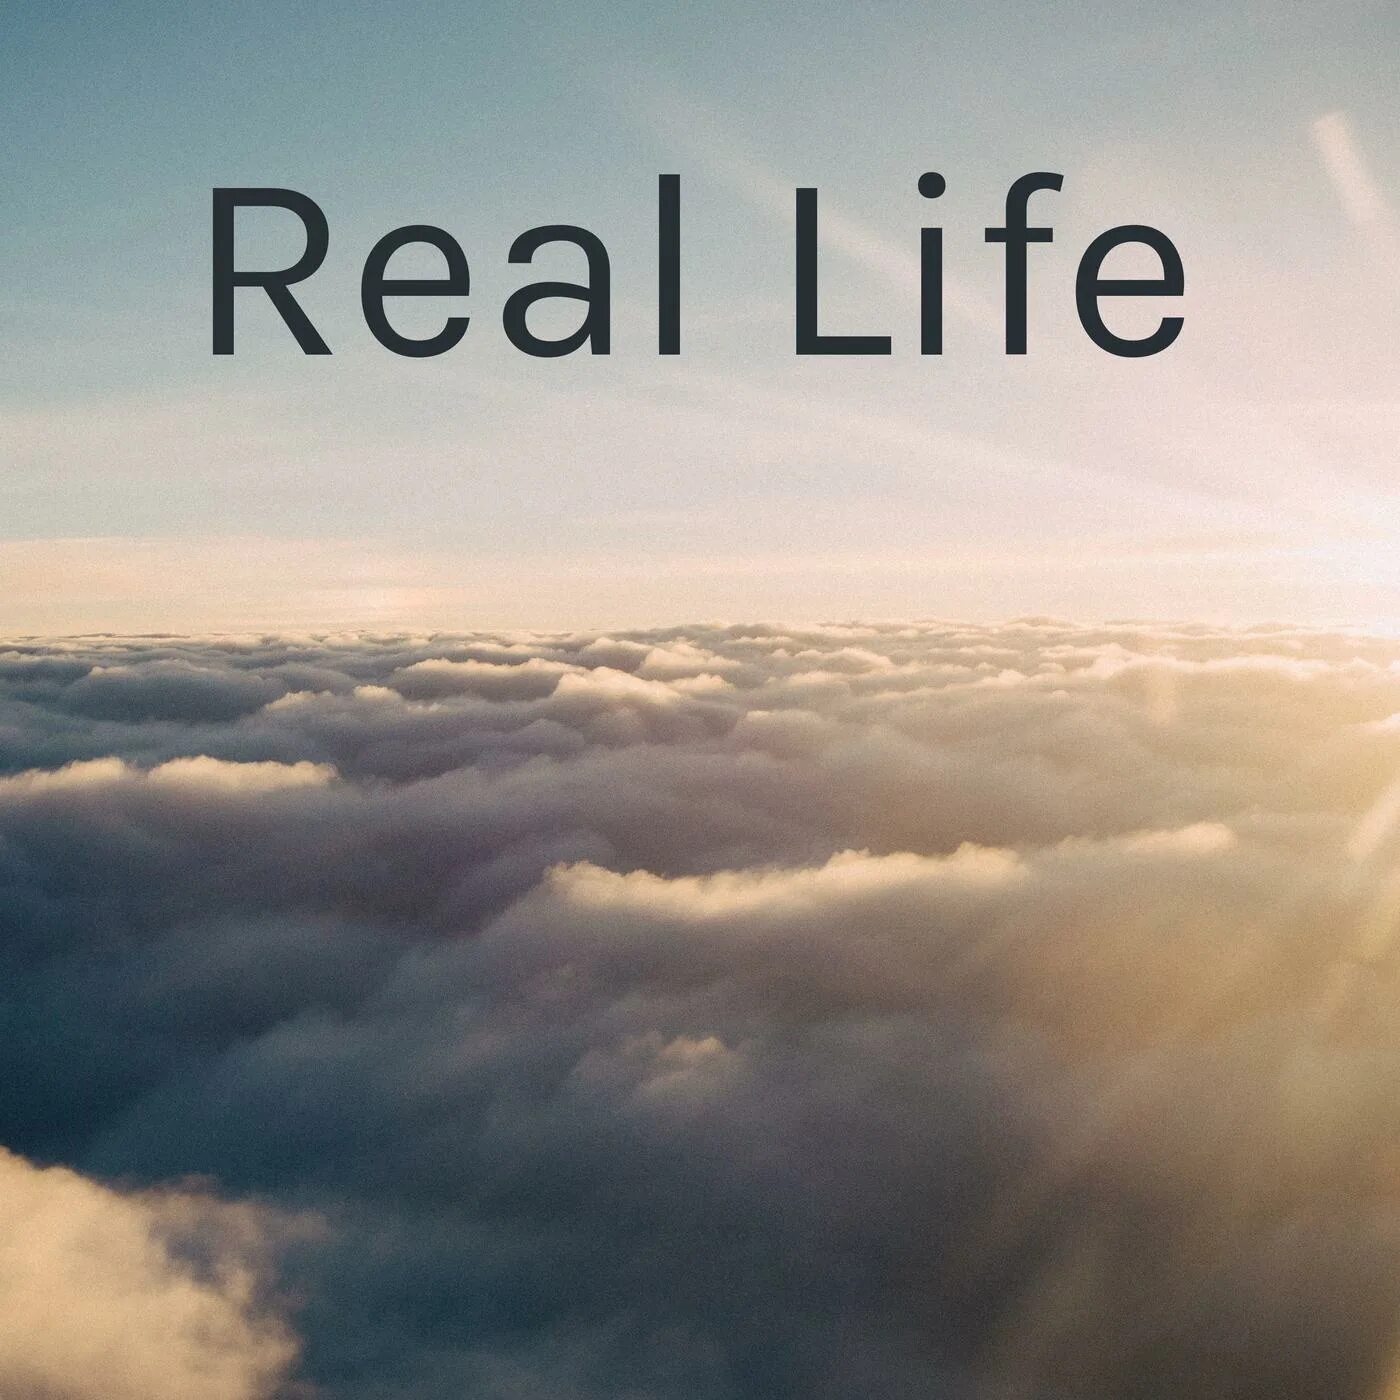 Real life edition. Real Life. Real Life надпись. Real Life картинка. Авы real Life.